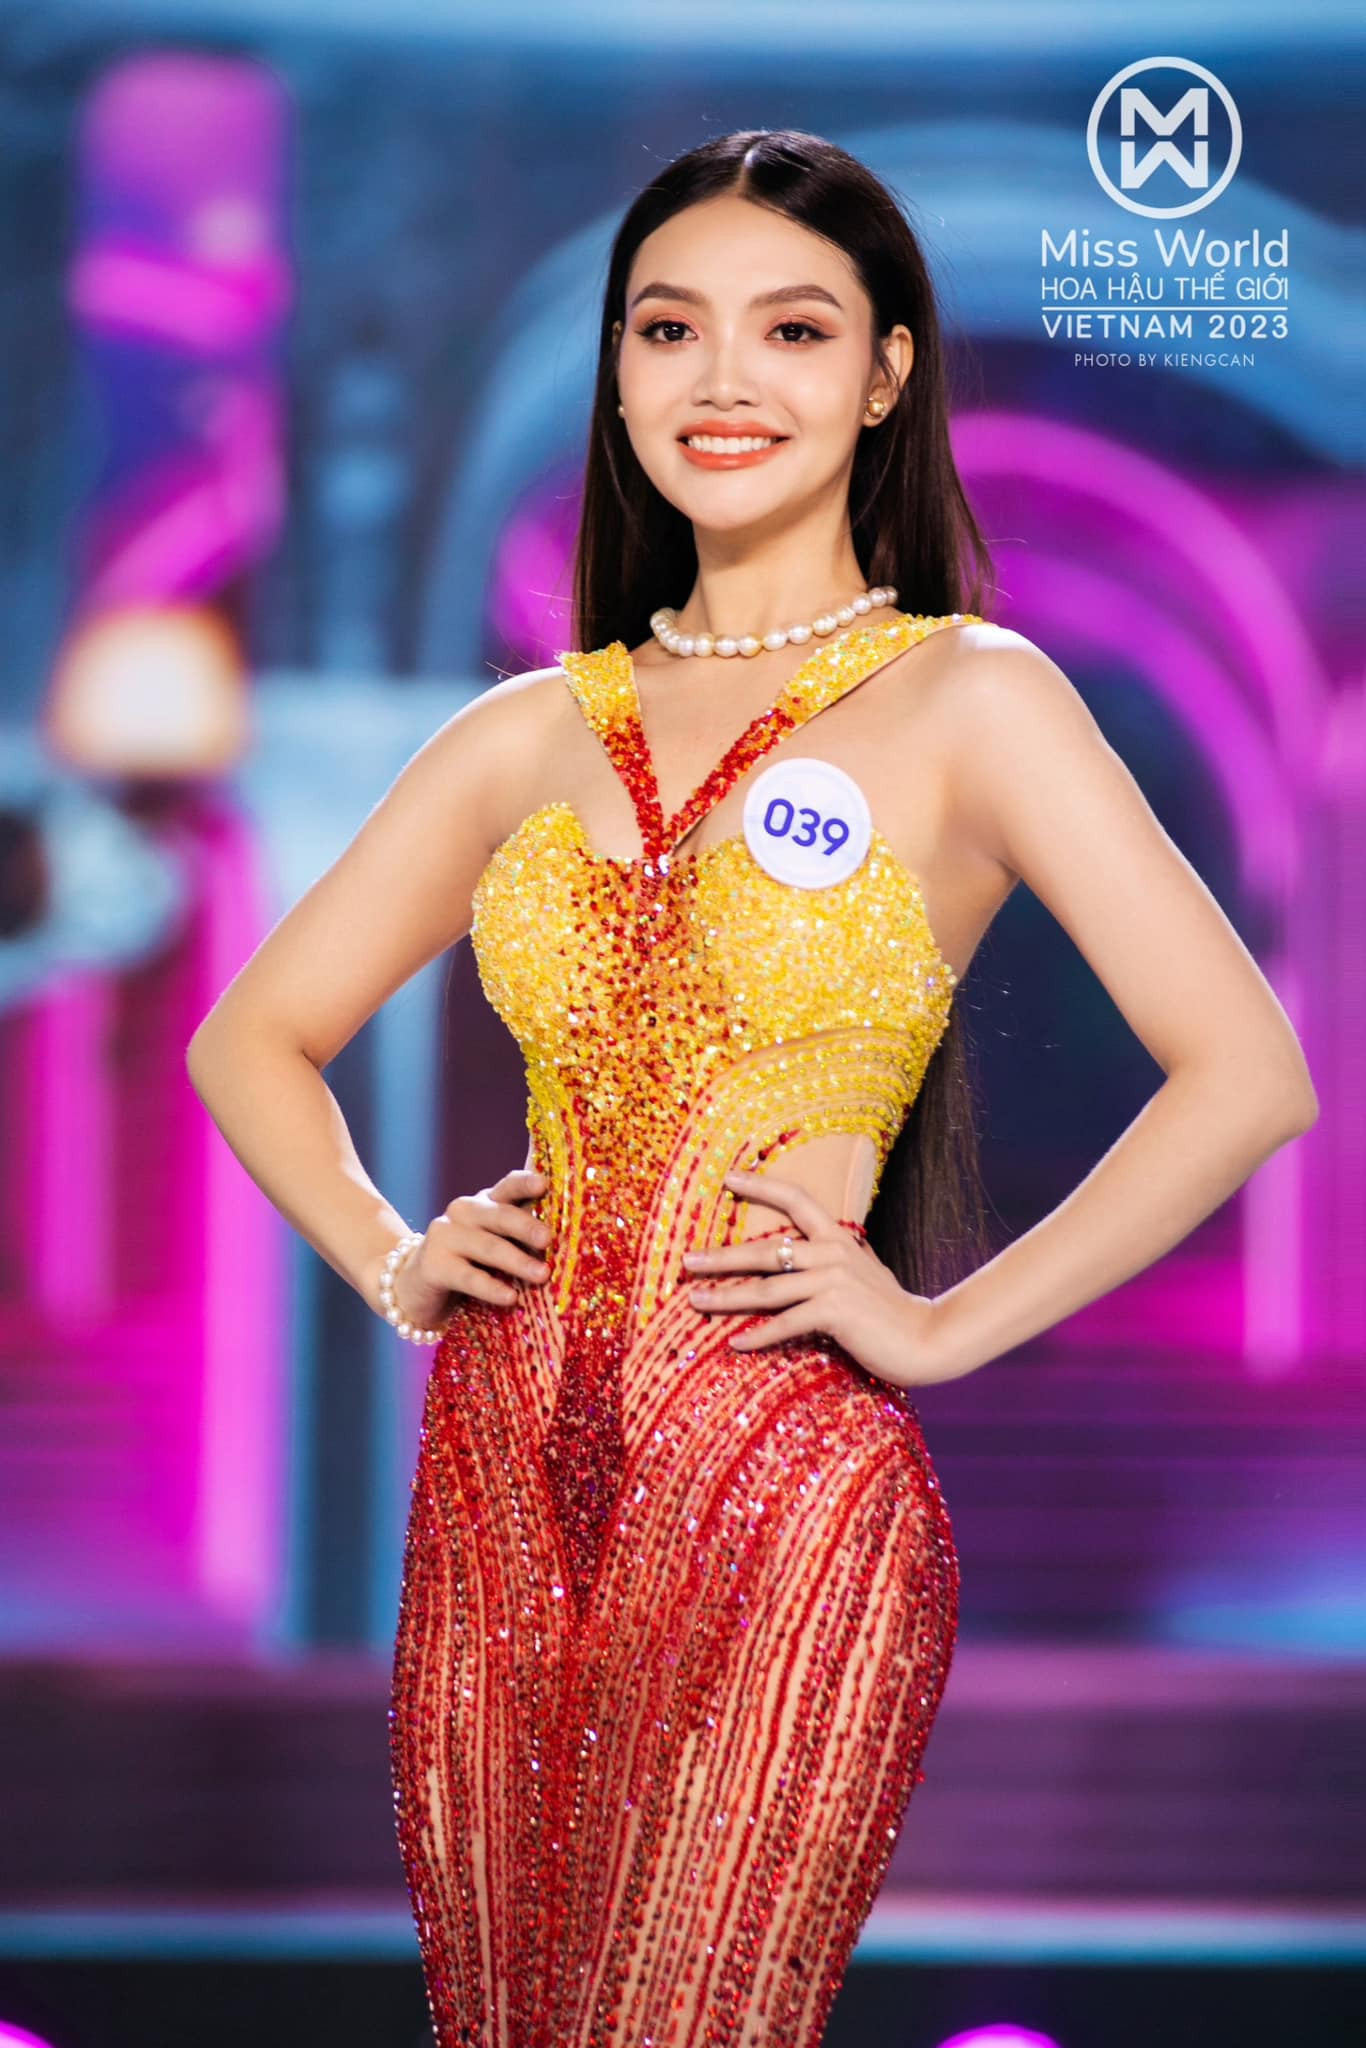 Nhan sắc cực ấn tượng của thí sinh Đan Phượng tại Miss World Vietnam 2023